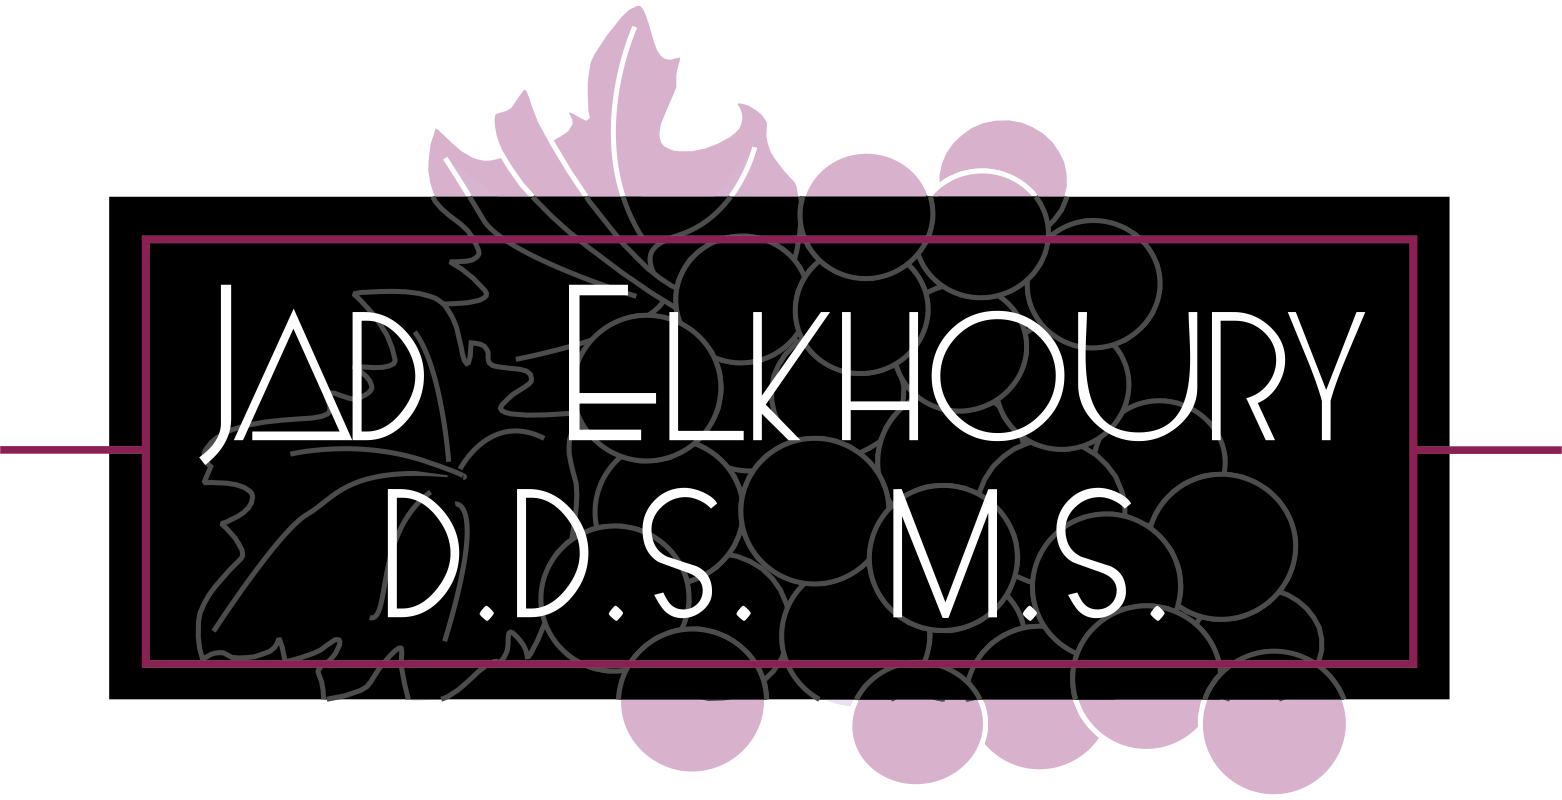 Jad Elkhoury D.D.S M.S